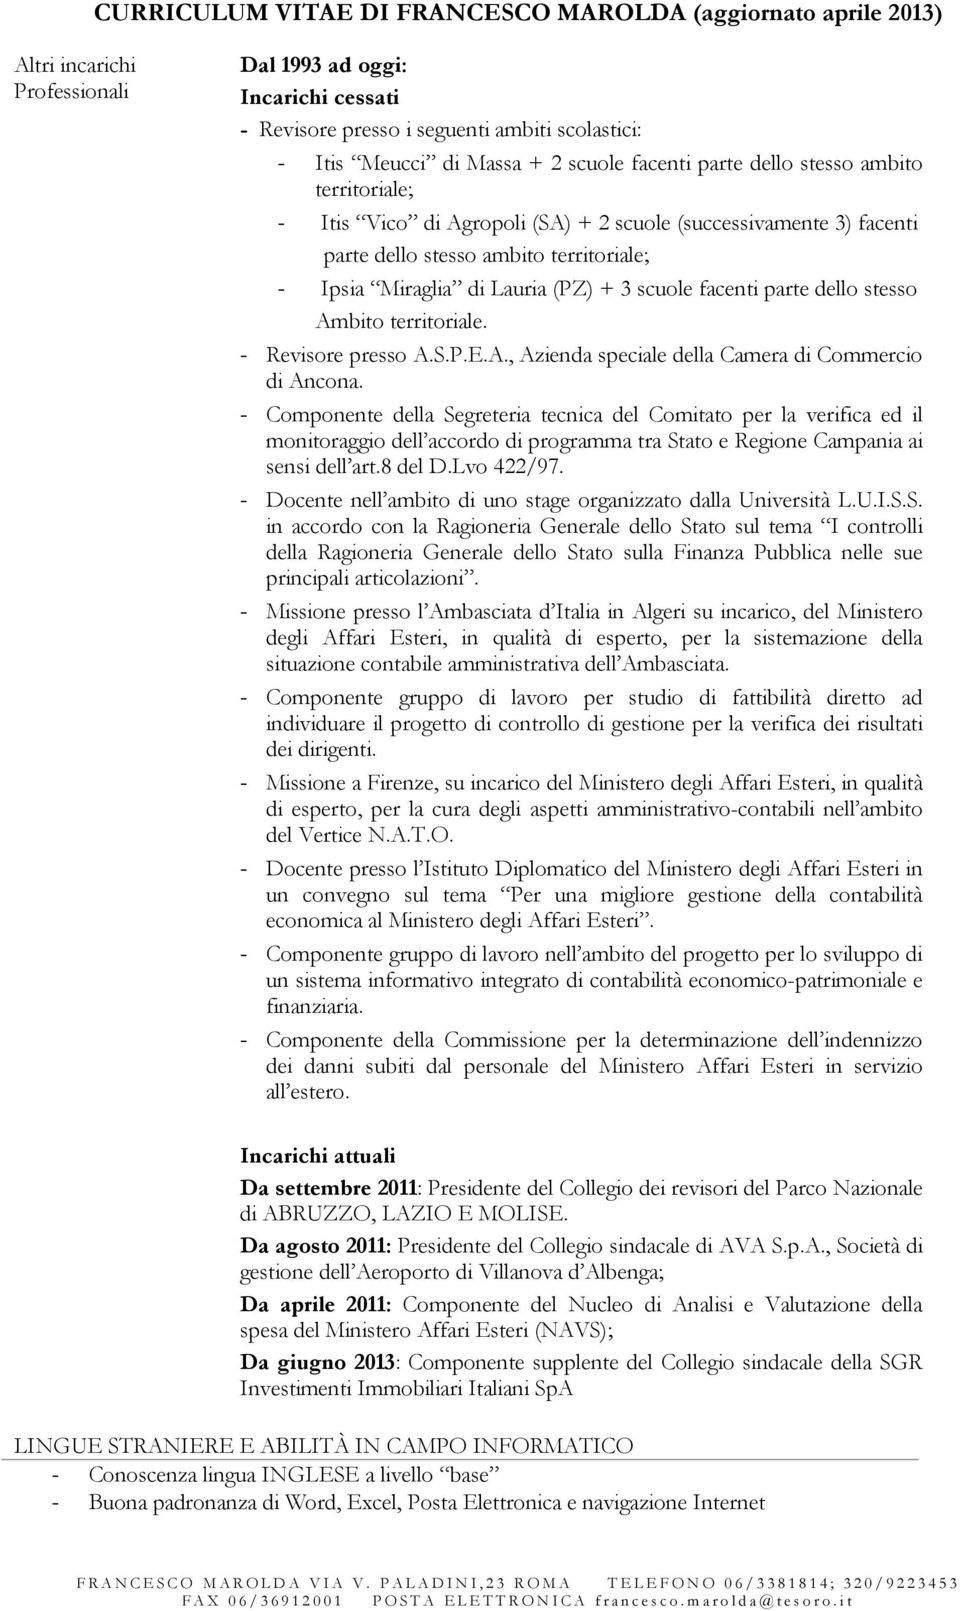 + 3 scuole facenti parte dello stesso Ambito territoriale. - Revisore presso A.S.P.E.A., Azienda speciale della Camera di Commercio di Ancona.